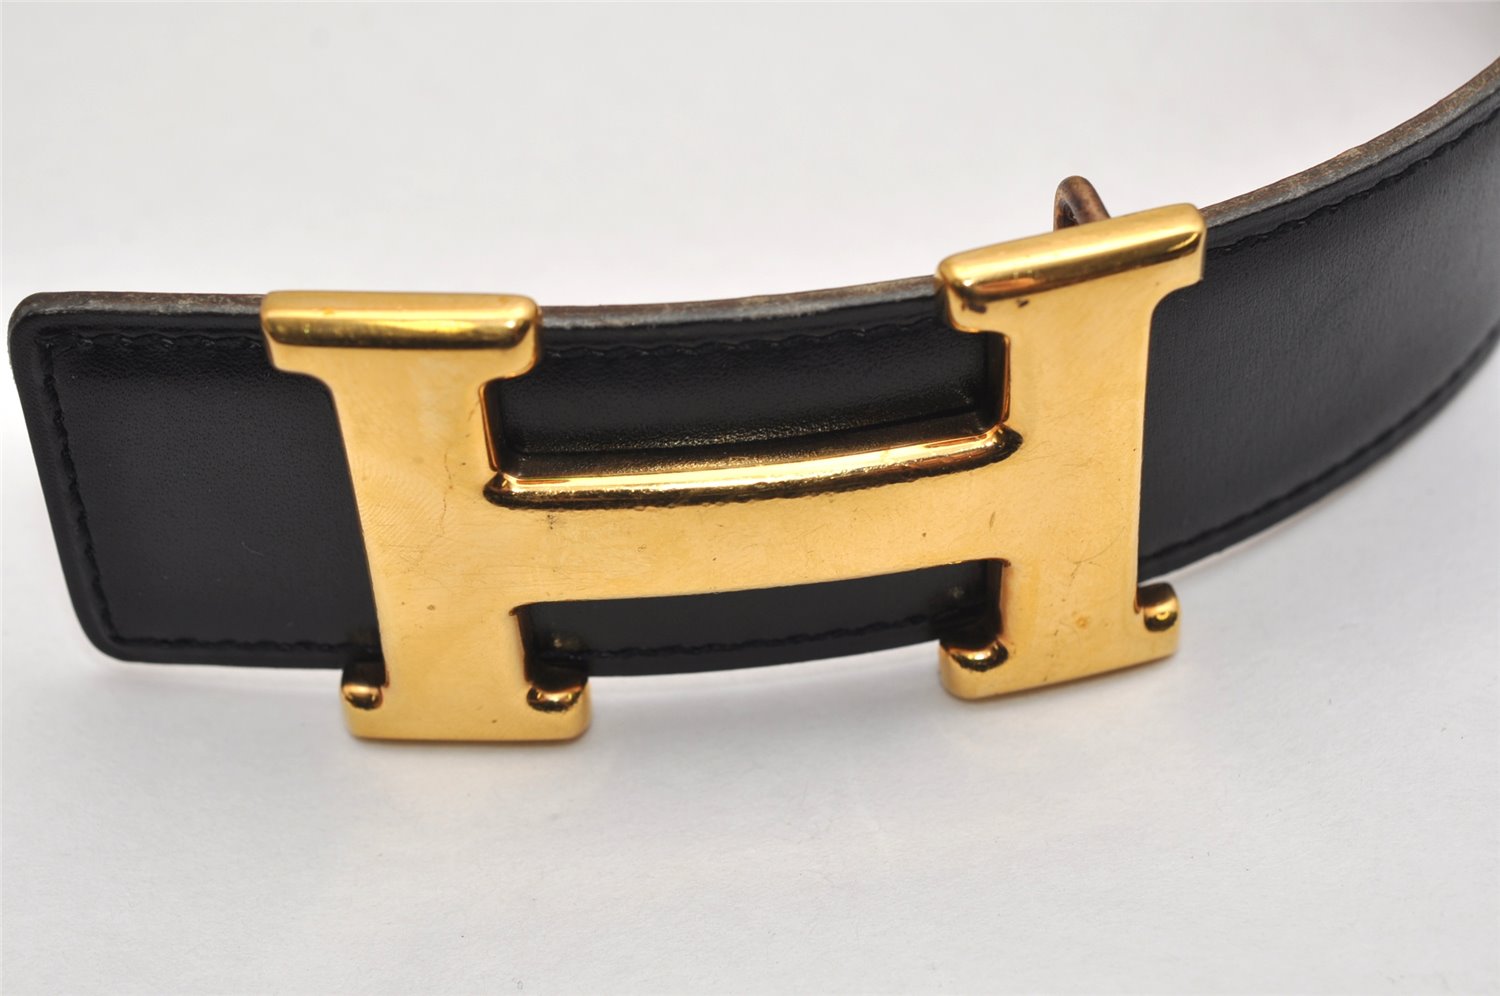 Authentic HERMES Constance Leather Belt Size 68cm 26.8